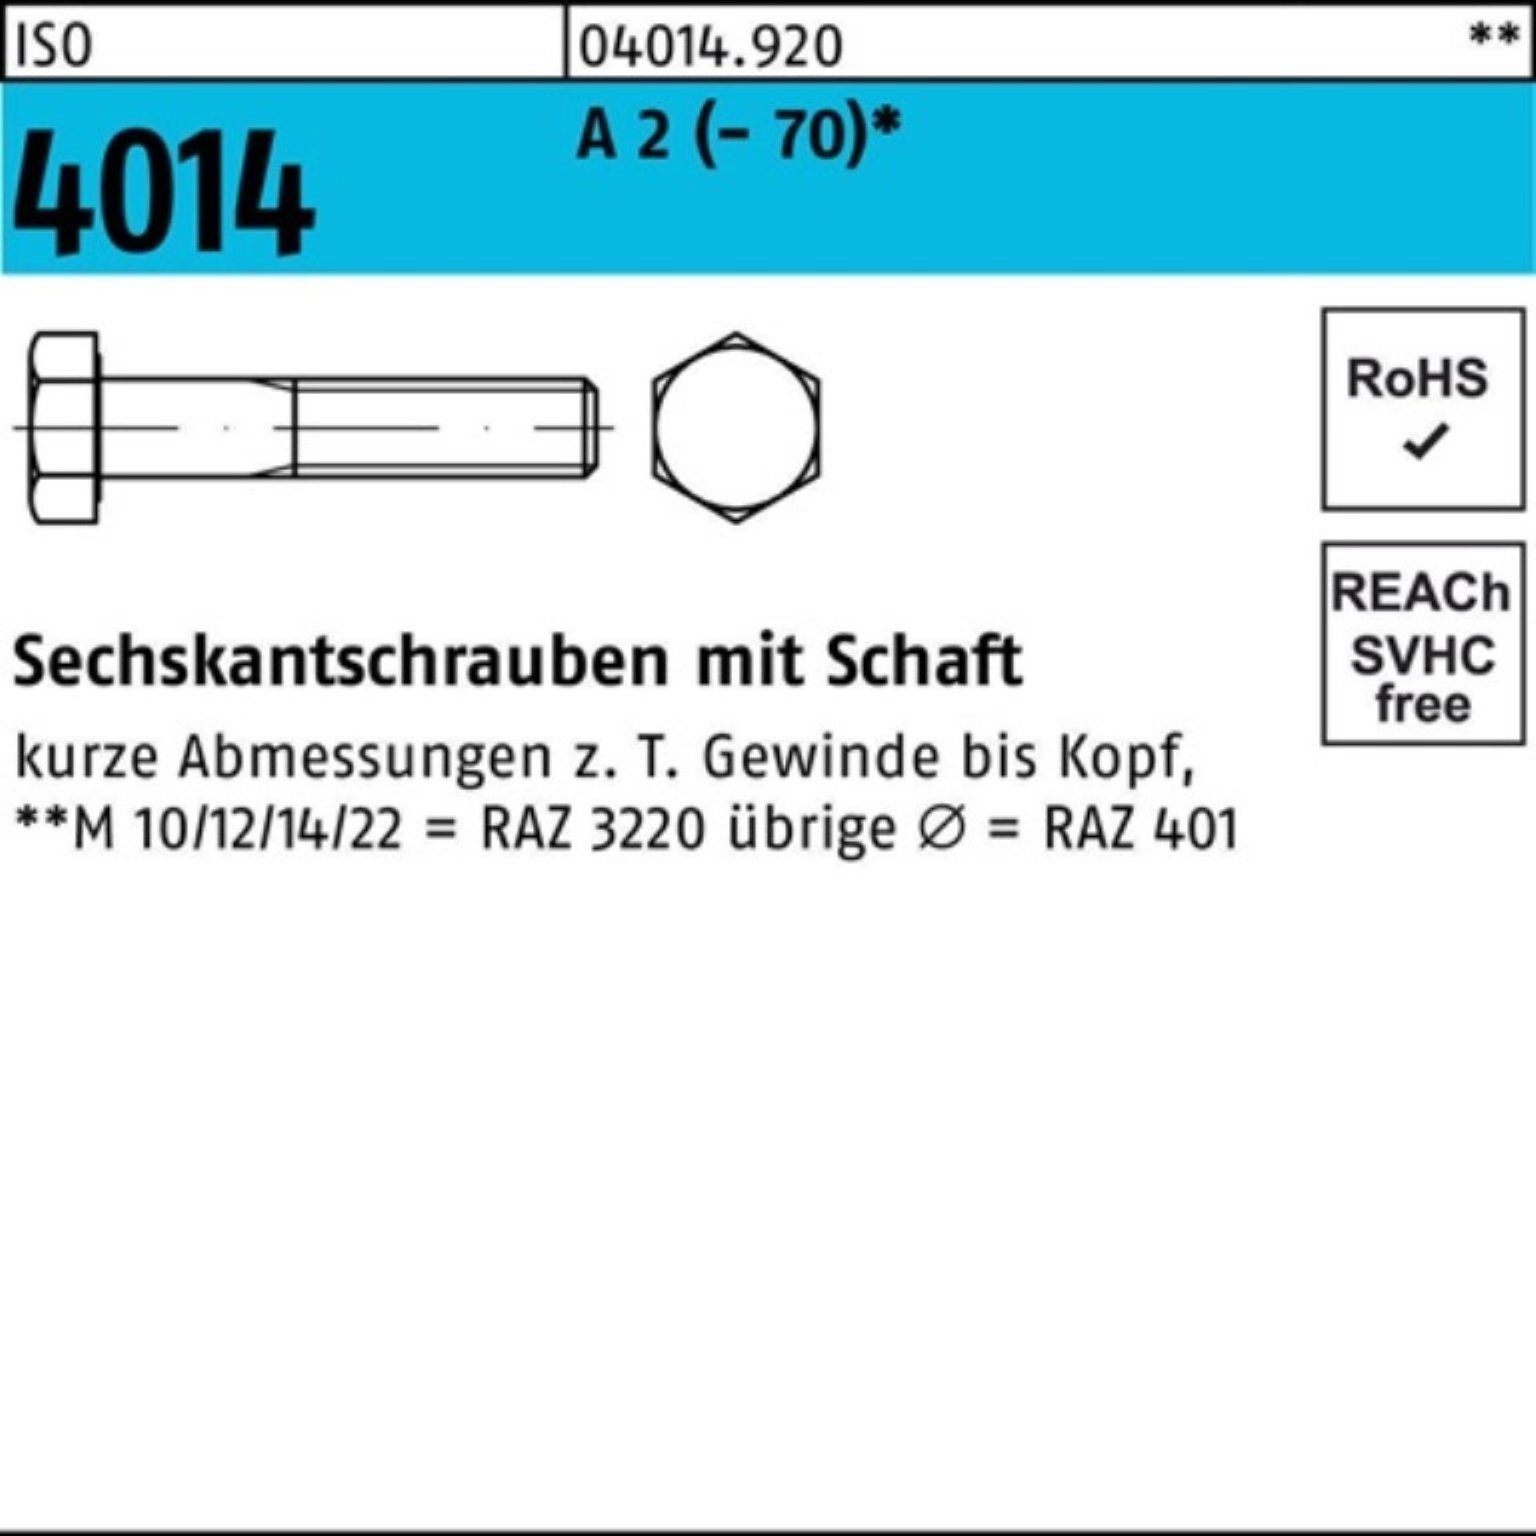 Bufab Sechskantschraube 100er Pack Sechskantschraube ISO 4014 Schaft M8x 70 A 2 (70) 100 St